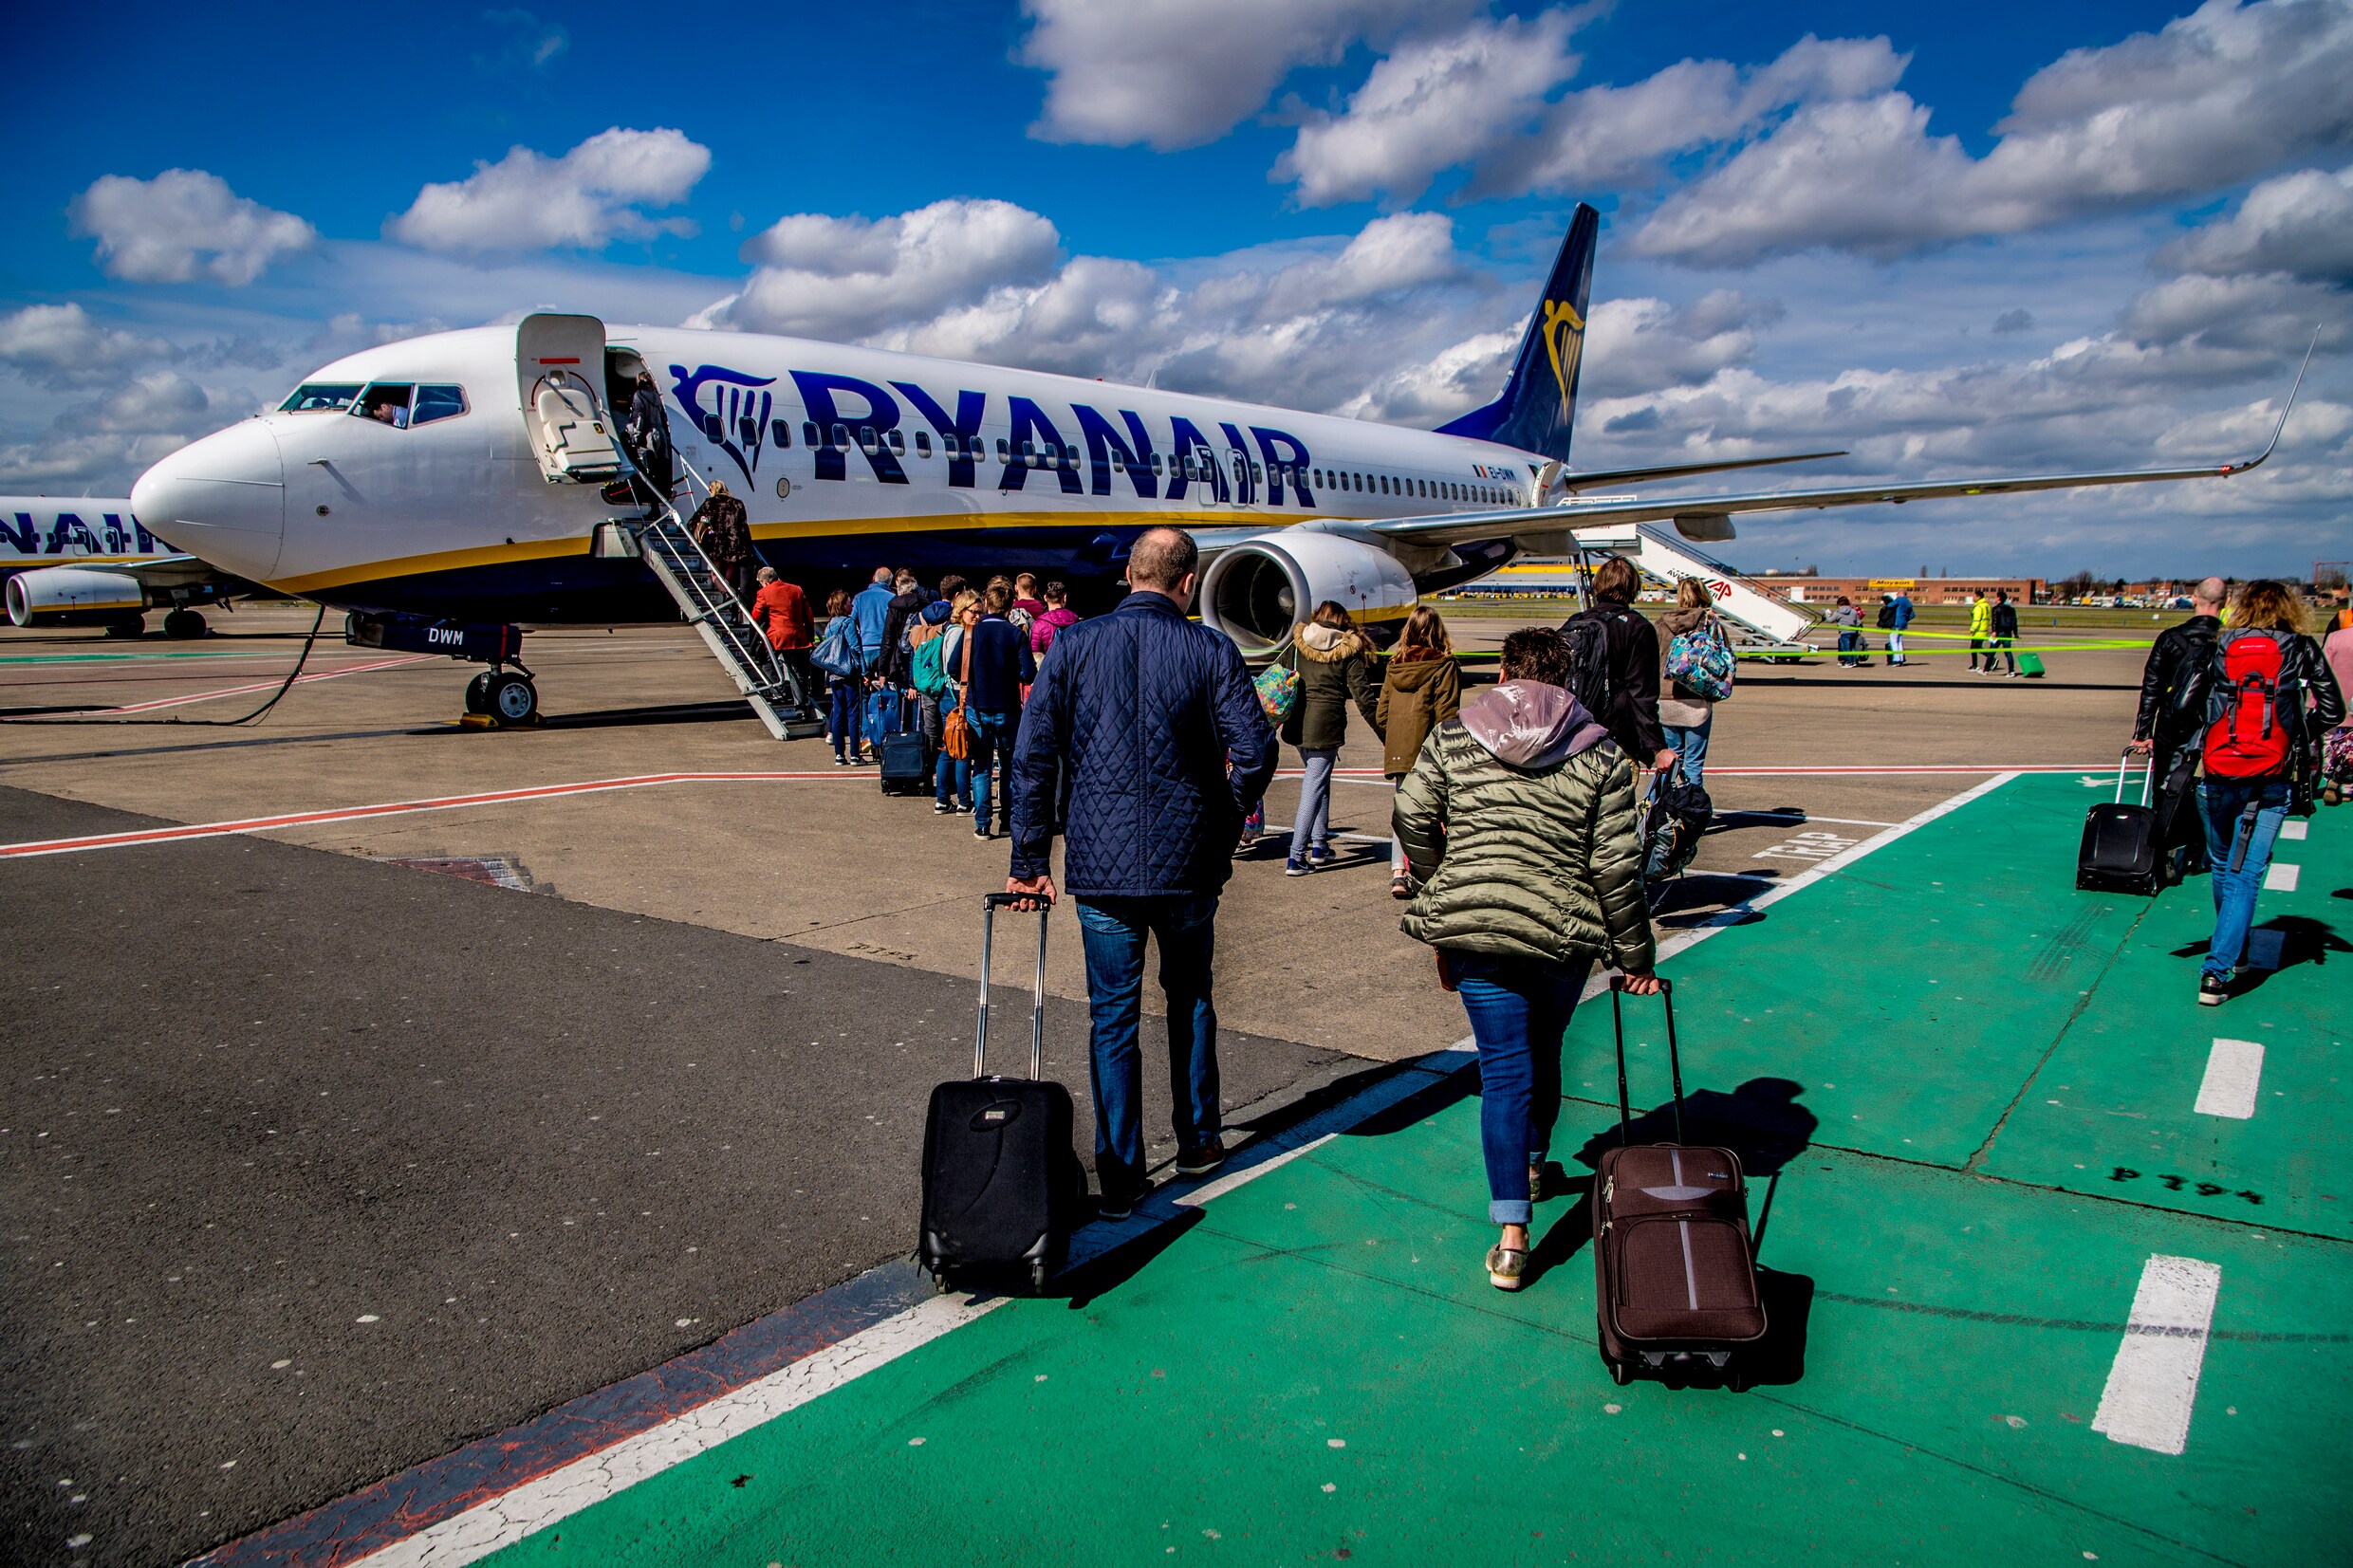 Ryanair trekt in alle stilte prijzen voor bagage en priority boarding op